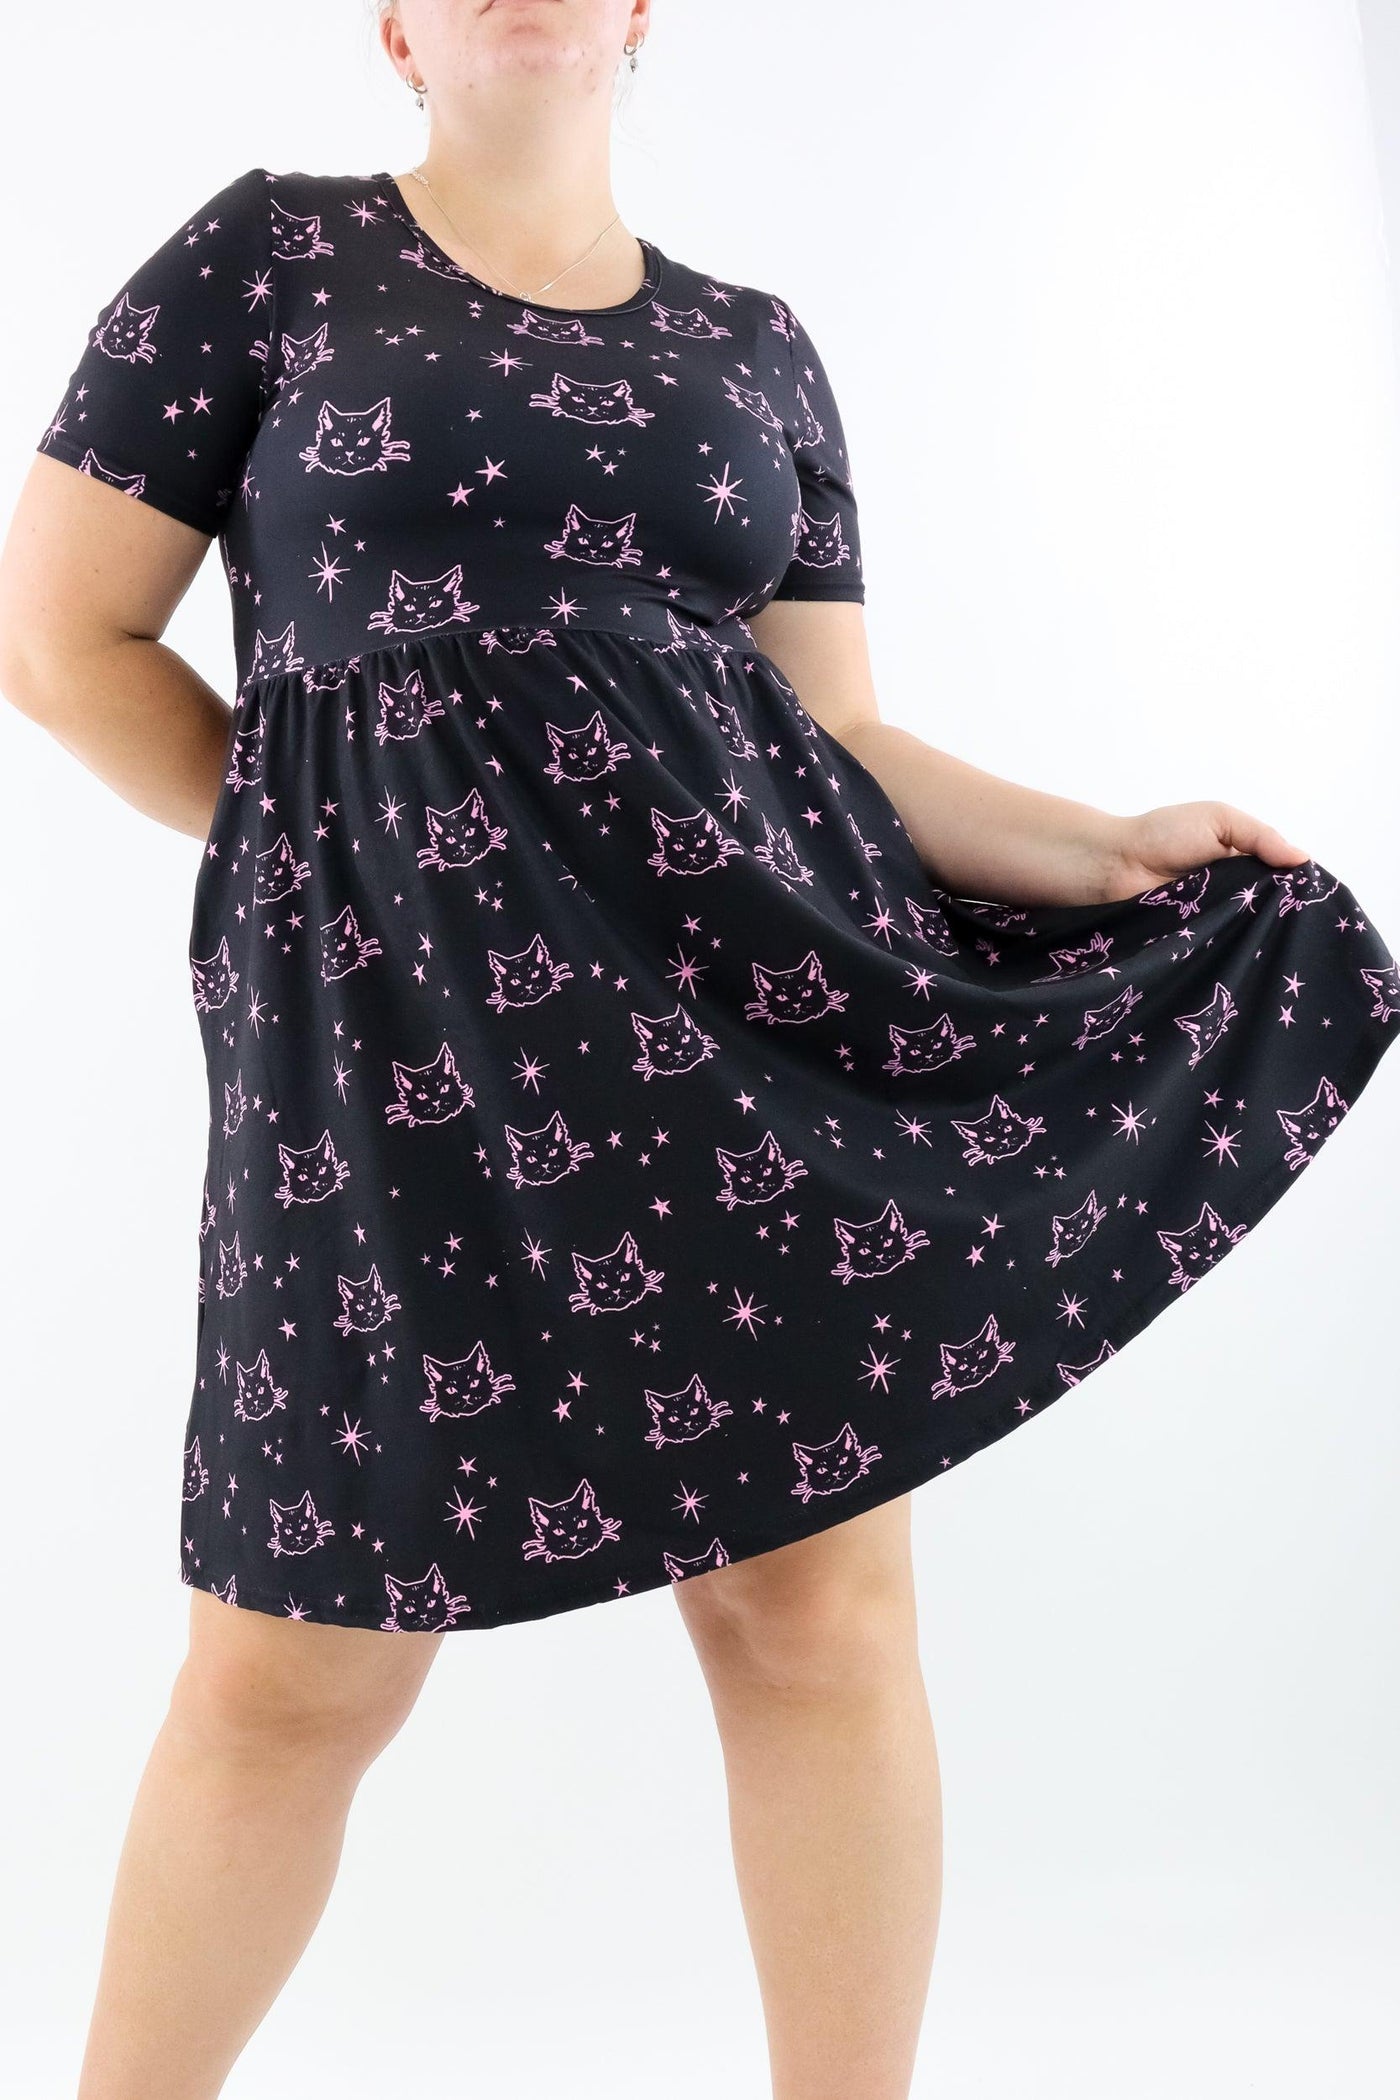 Pink Cat - Short Sleeve Skater Dress - Knee Length - Side Pockets